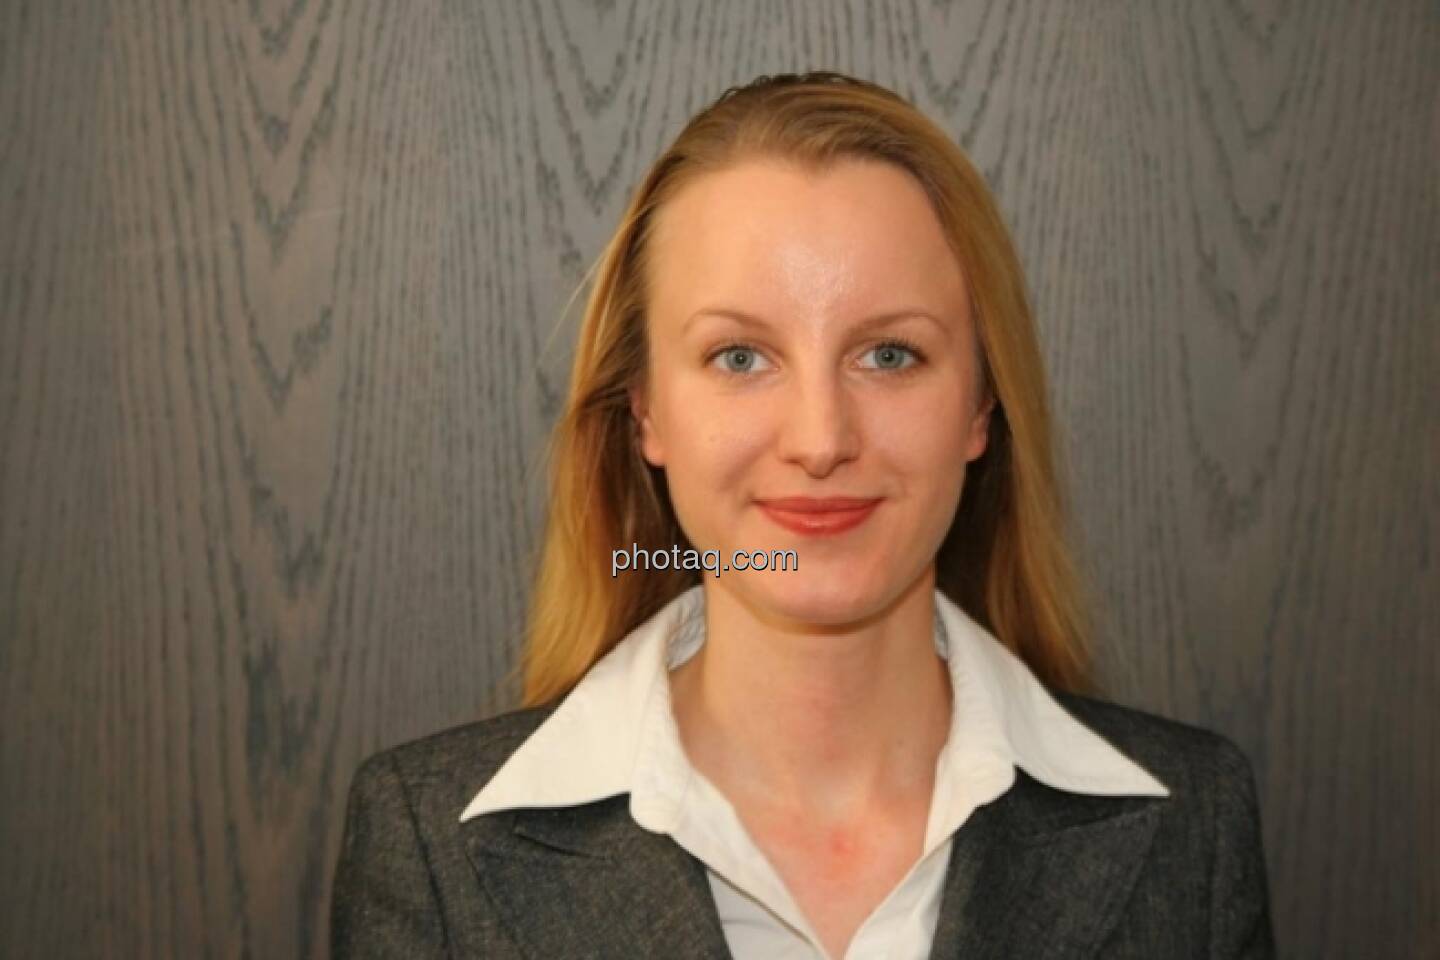 Marion Swoboda-Brachvogel, Bankerin (25. April) - finanzmarktfoto.at wünscht alles Gute!